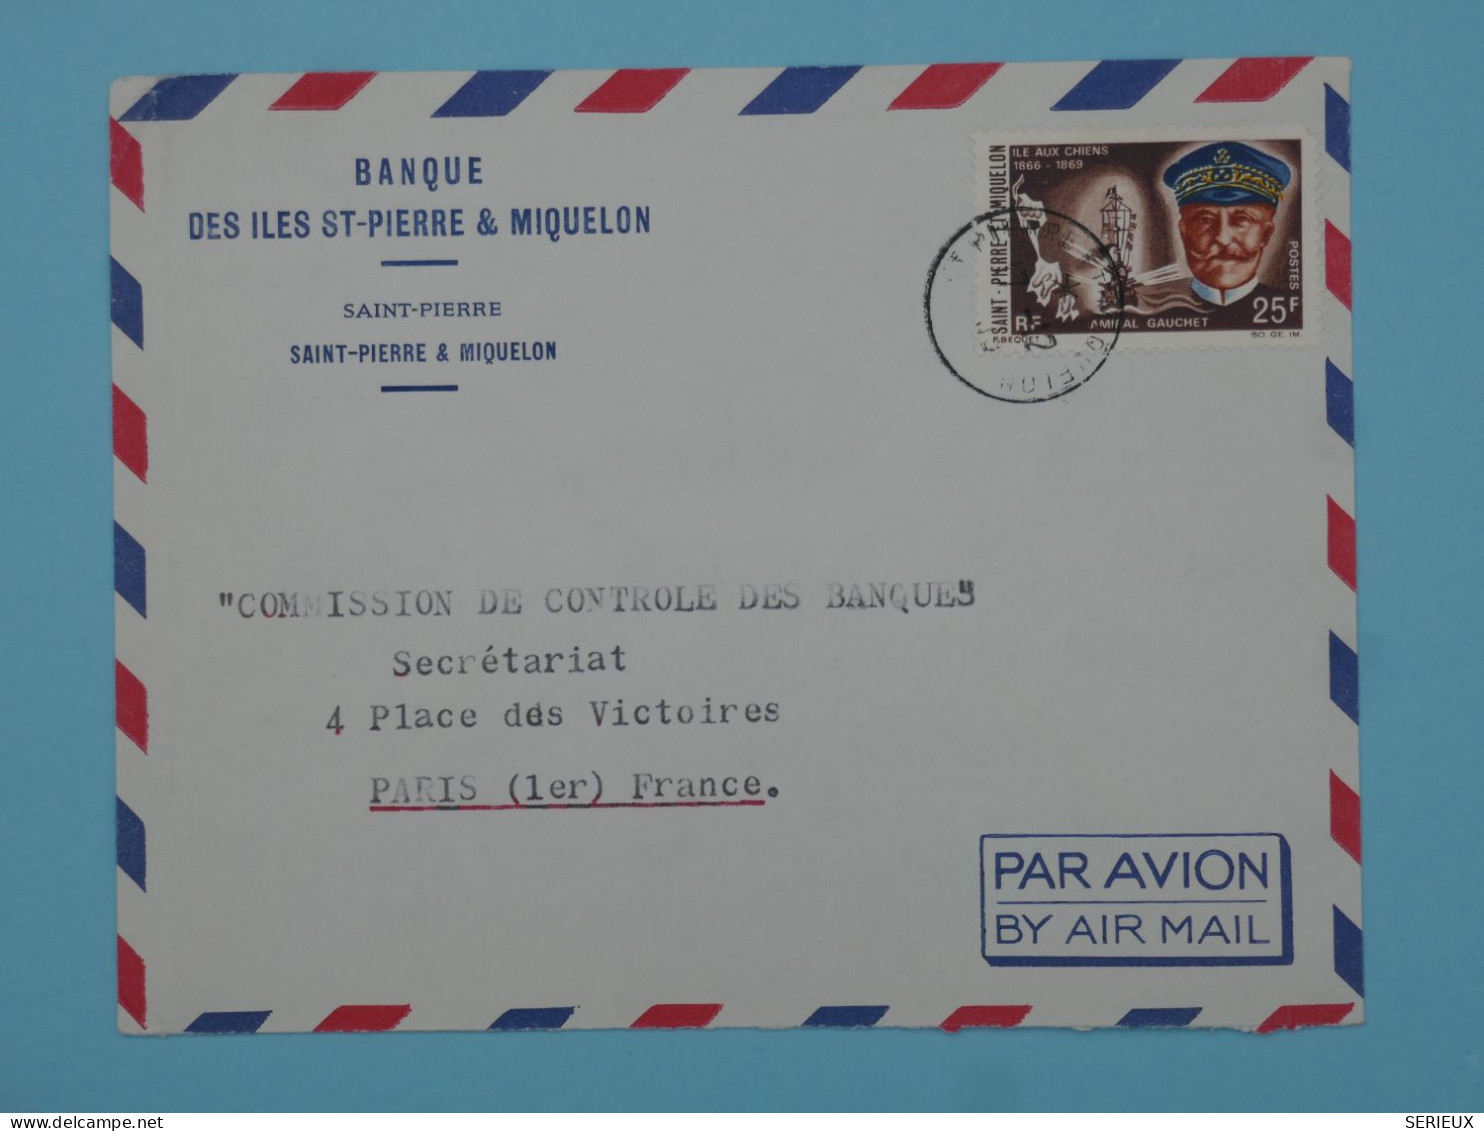 BT15  ST PIERRE & MIQUELON  BELLE LETTRE  1966 BANQUE  PAR AVION A PARIS  FRANCE ++AFF. PLAISANT +++ - Storia Postale